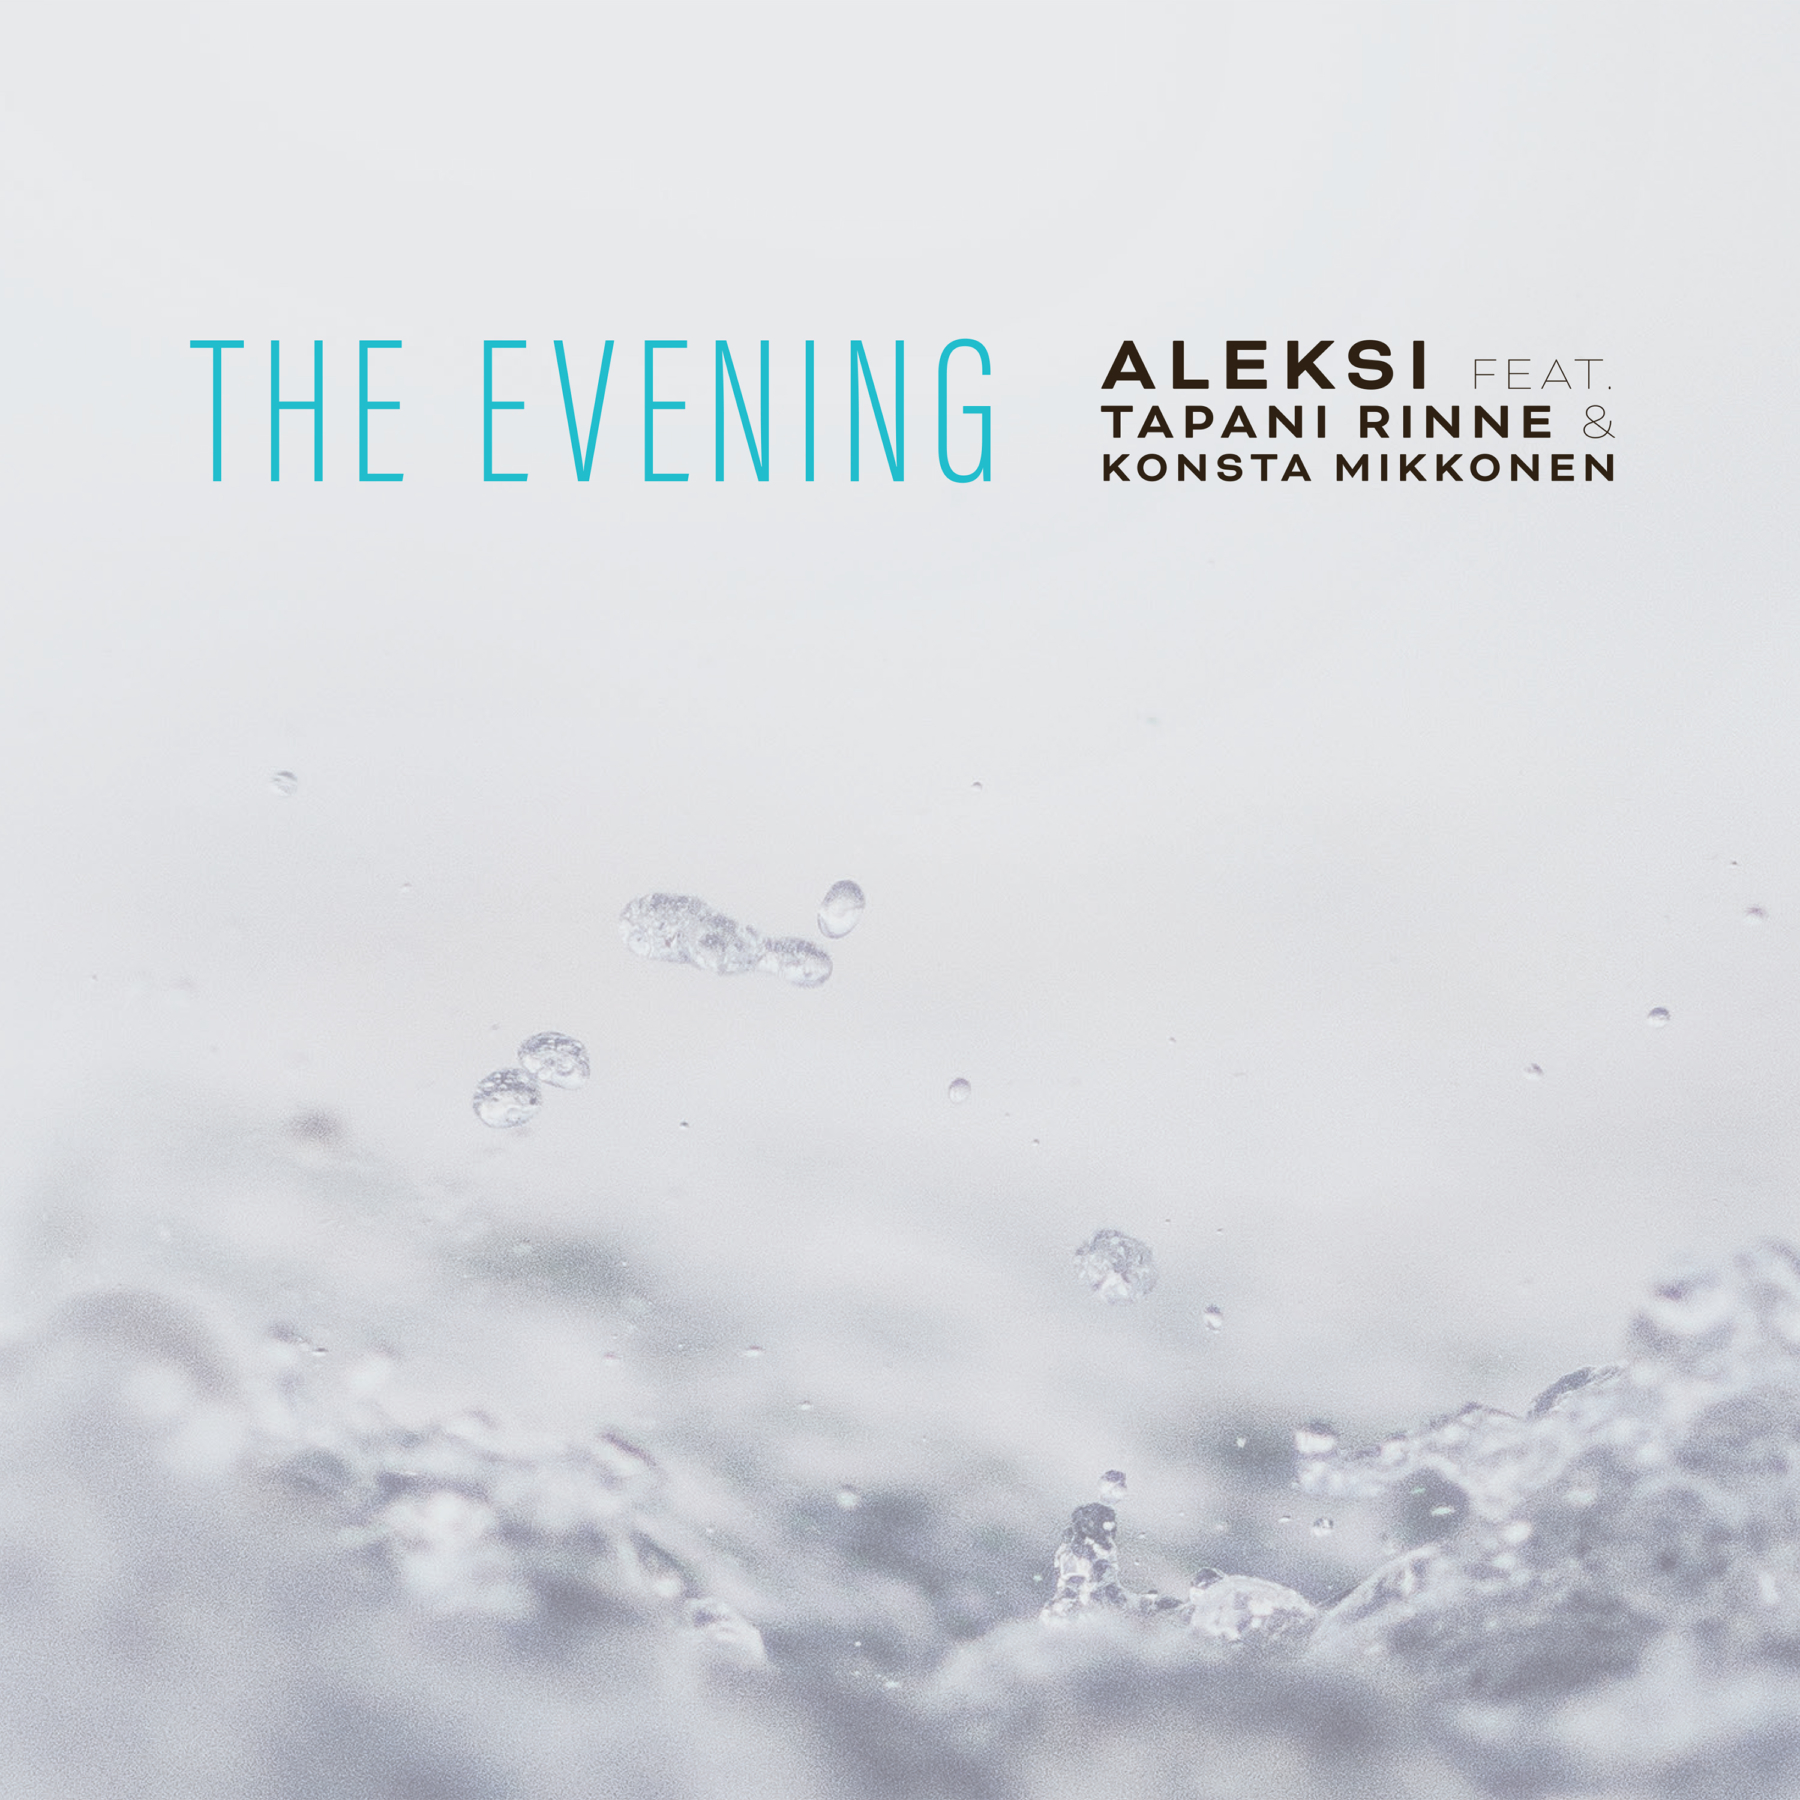 Aleksi feat. Tapani Rinne & Konsta Mikkonen: The Evening